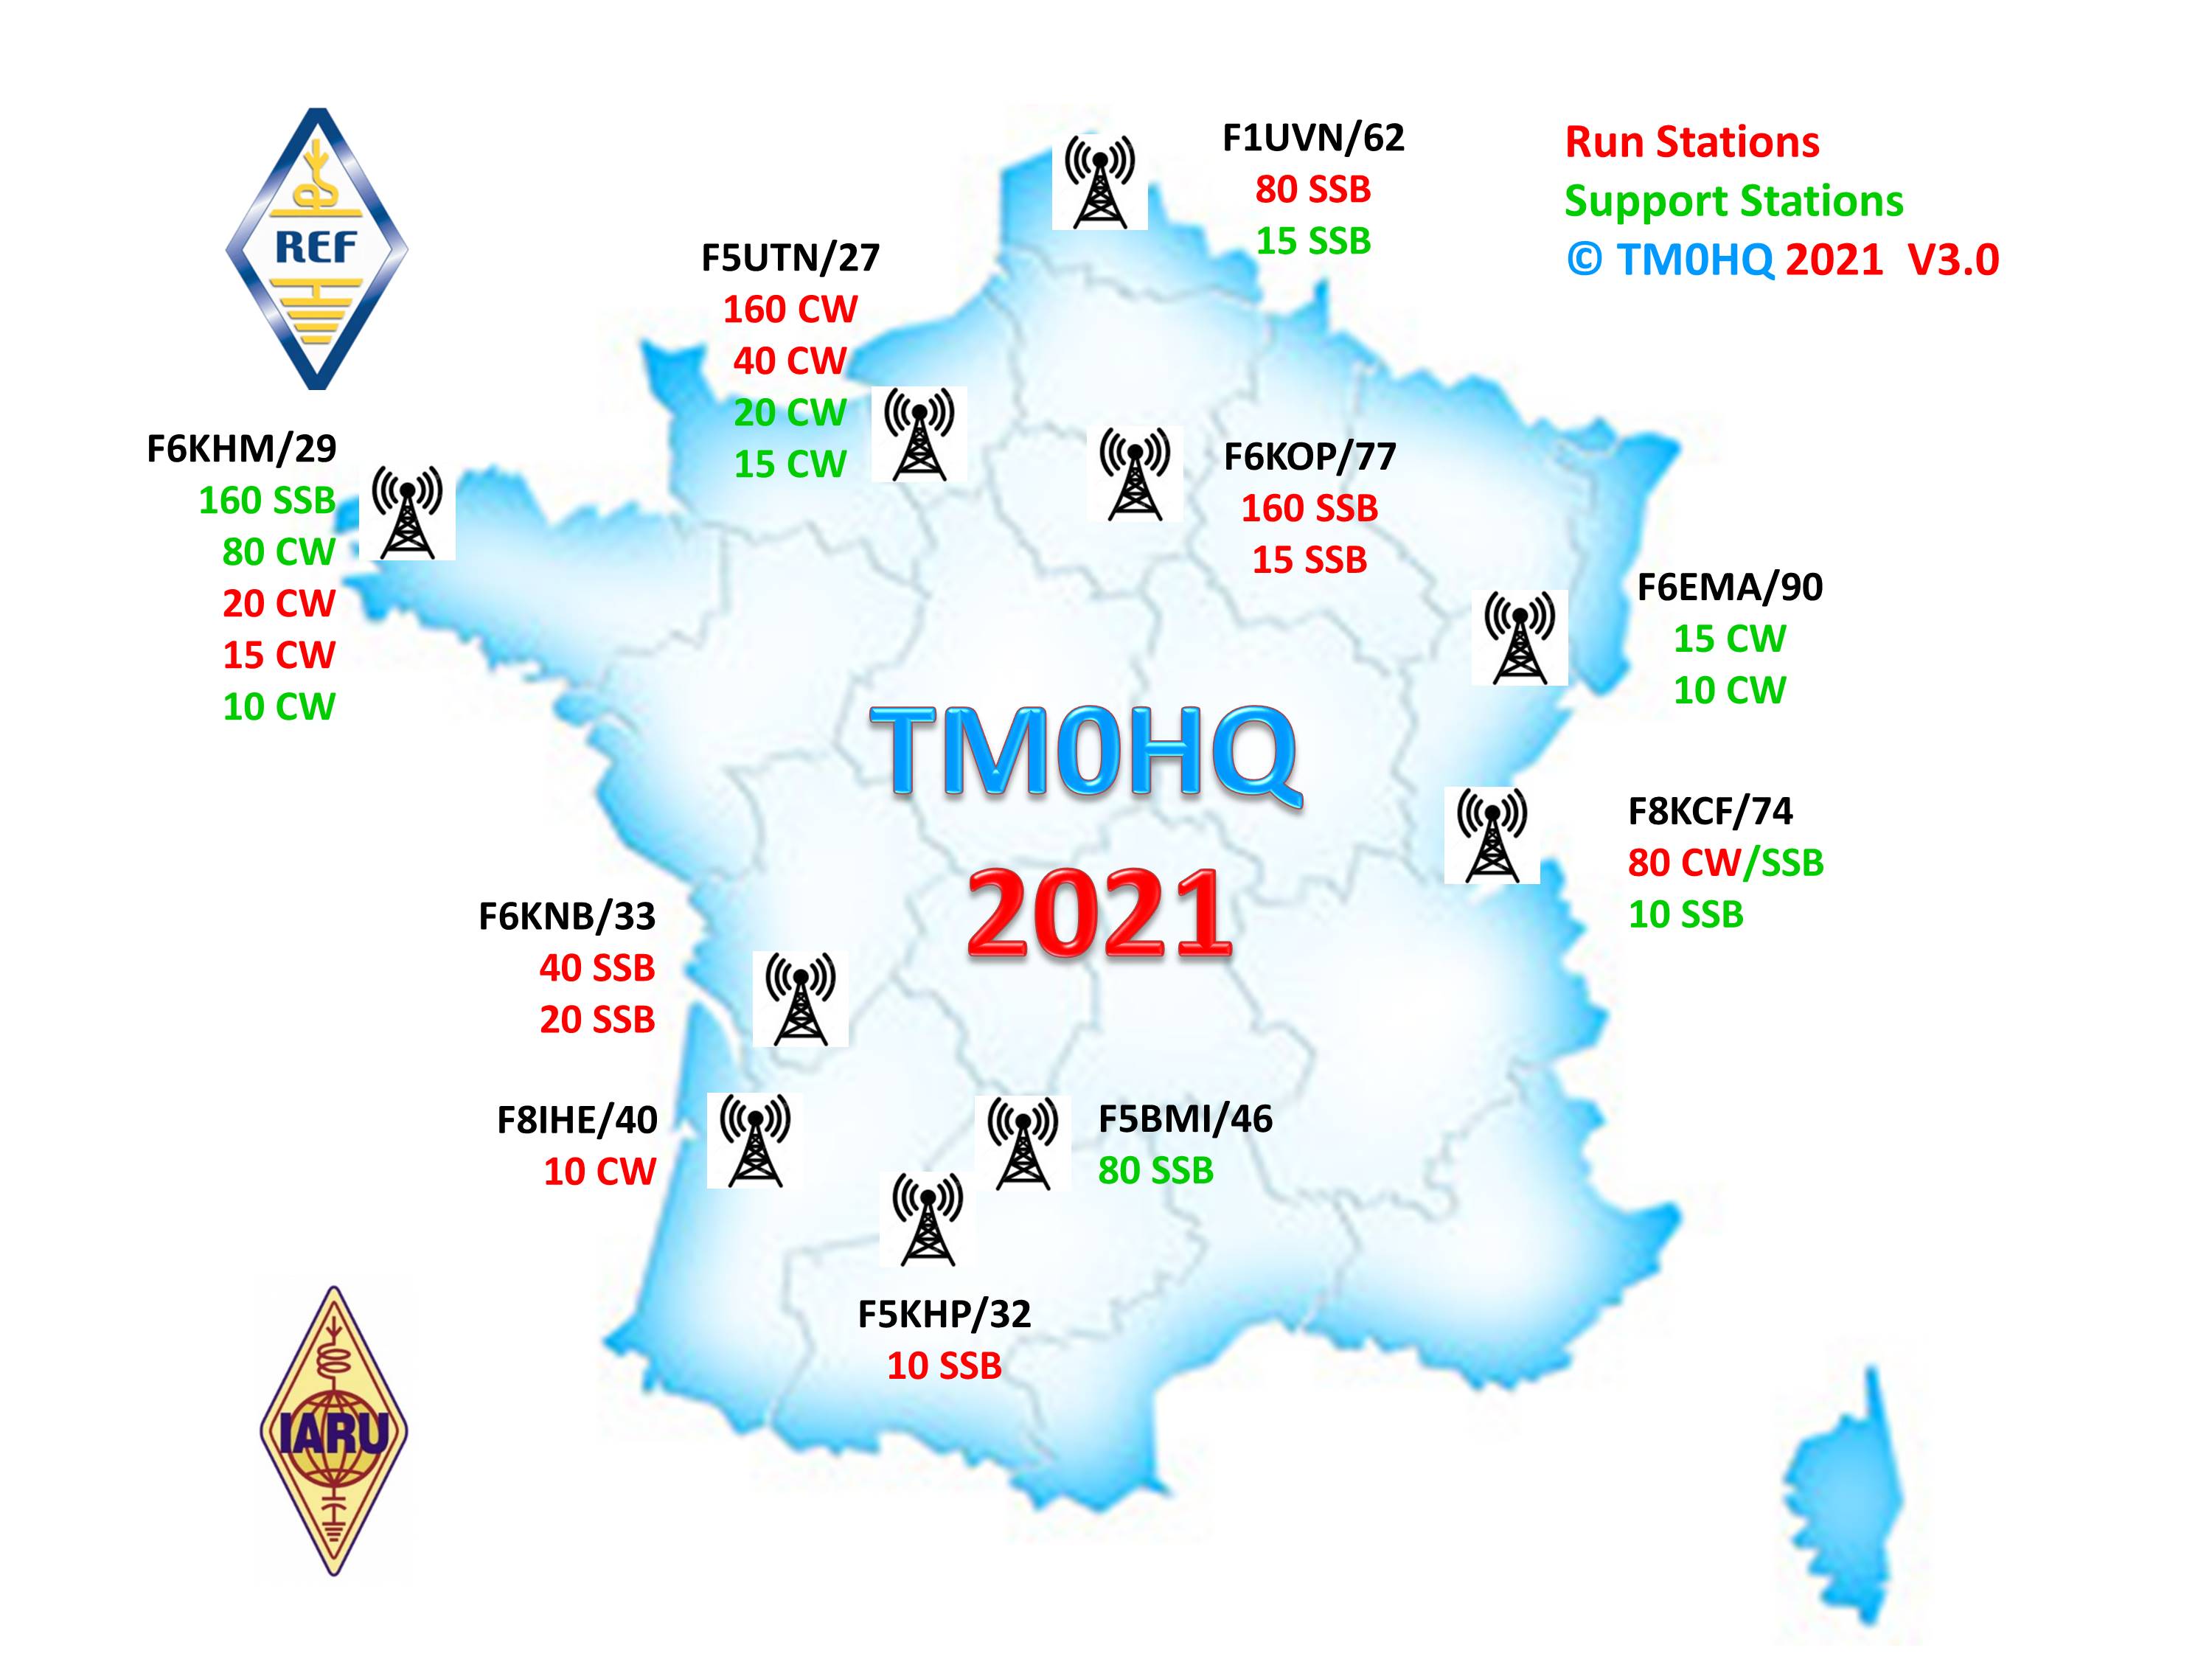 tm0hq2021-stations-v3.0